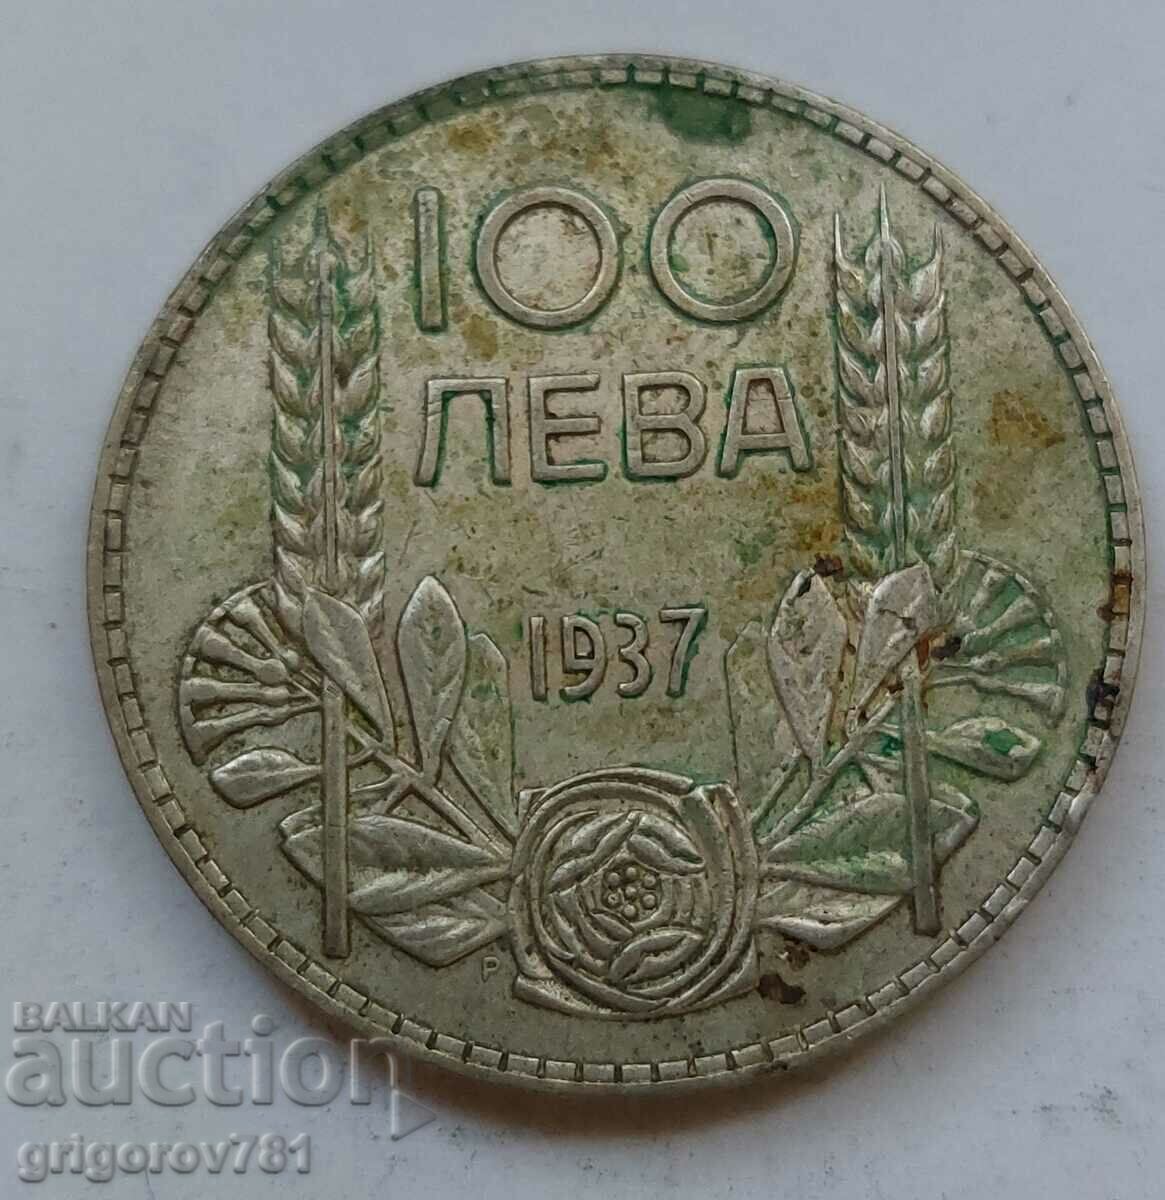 100 leva silver Bulgaria 1937 - silver coin #143